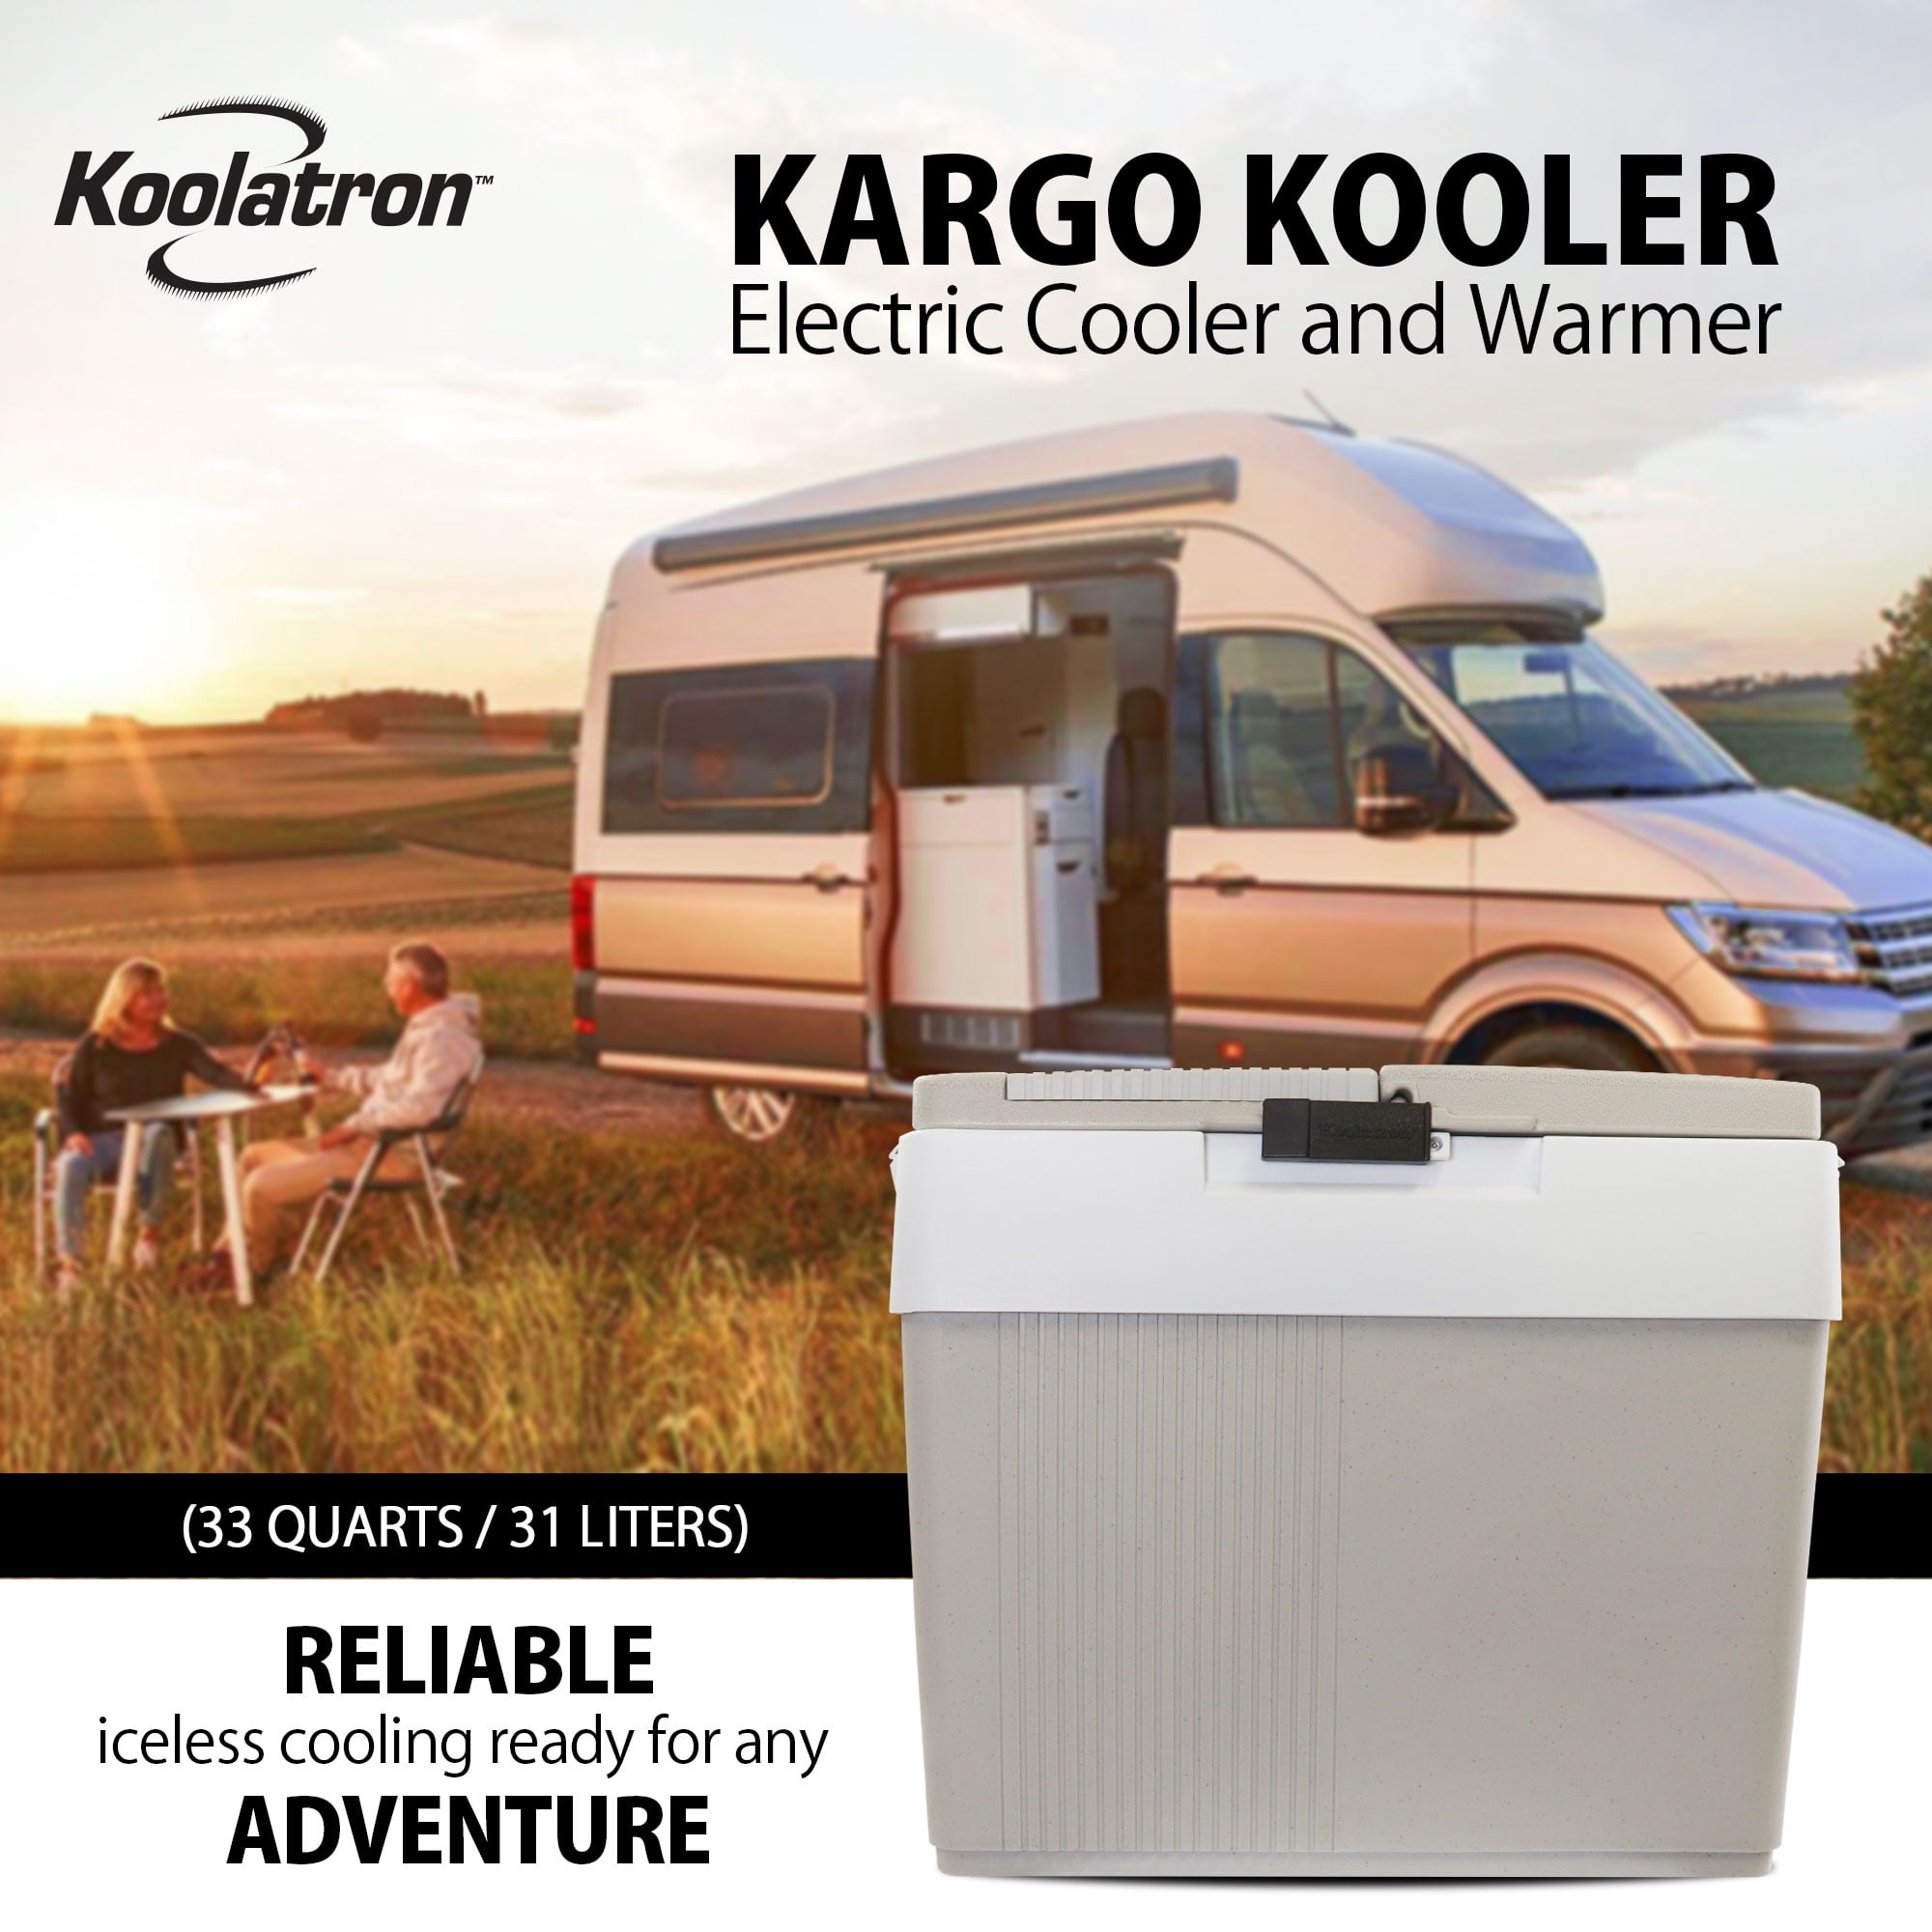 アウトレット最安 冷蔵庫 保温庫 30L Koolatron P65 Kargo 12v Portable Cooler 家電 冷蔵庫・冷凍庫 